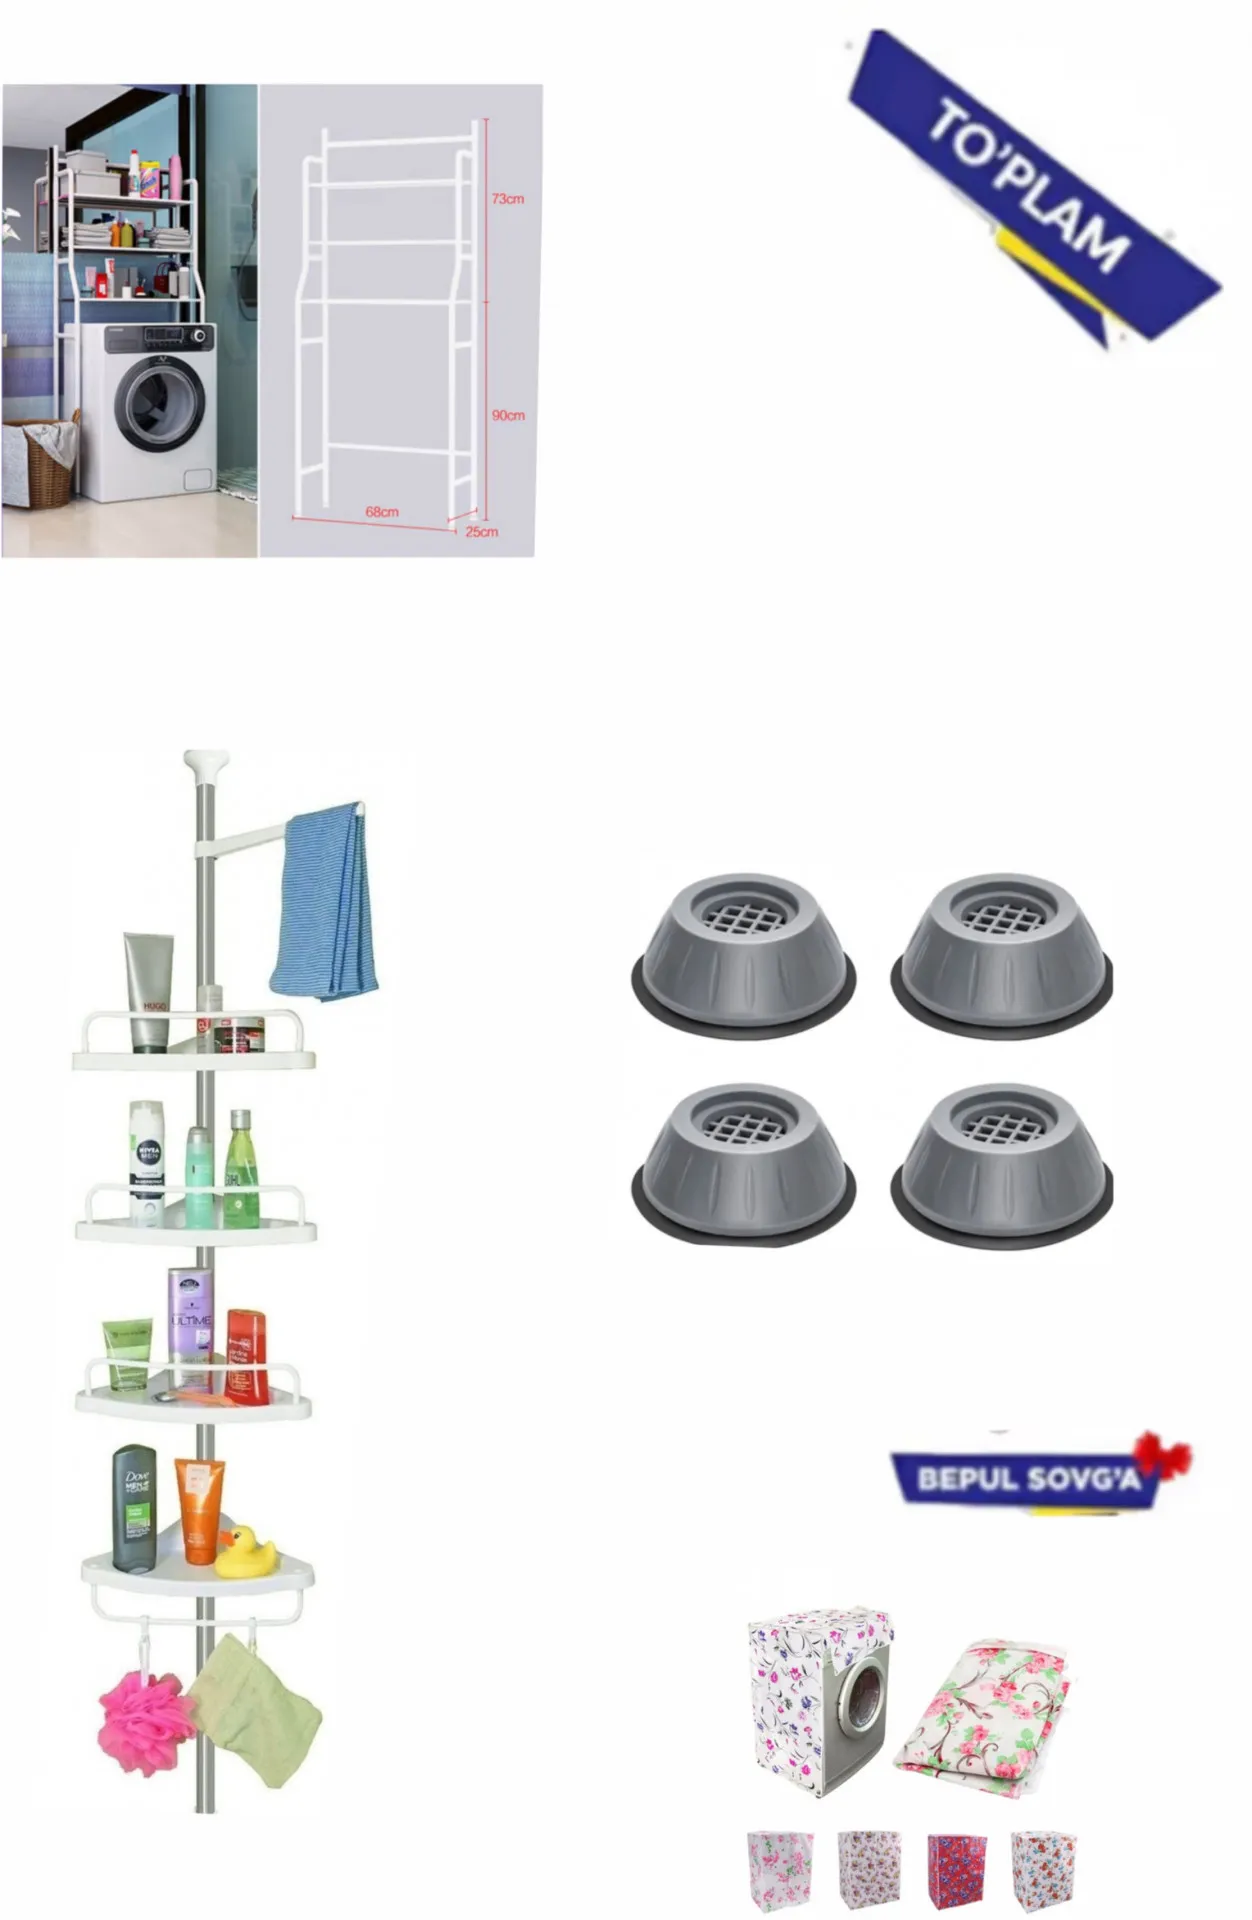 Набор для ванной: Полка для ванной/Стеллаж над стиральной машиной/Полка для ванной комнаты, угловая/Машинная антивибрационная бесшумная защита + в подарок чехол для стиралной машини#1